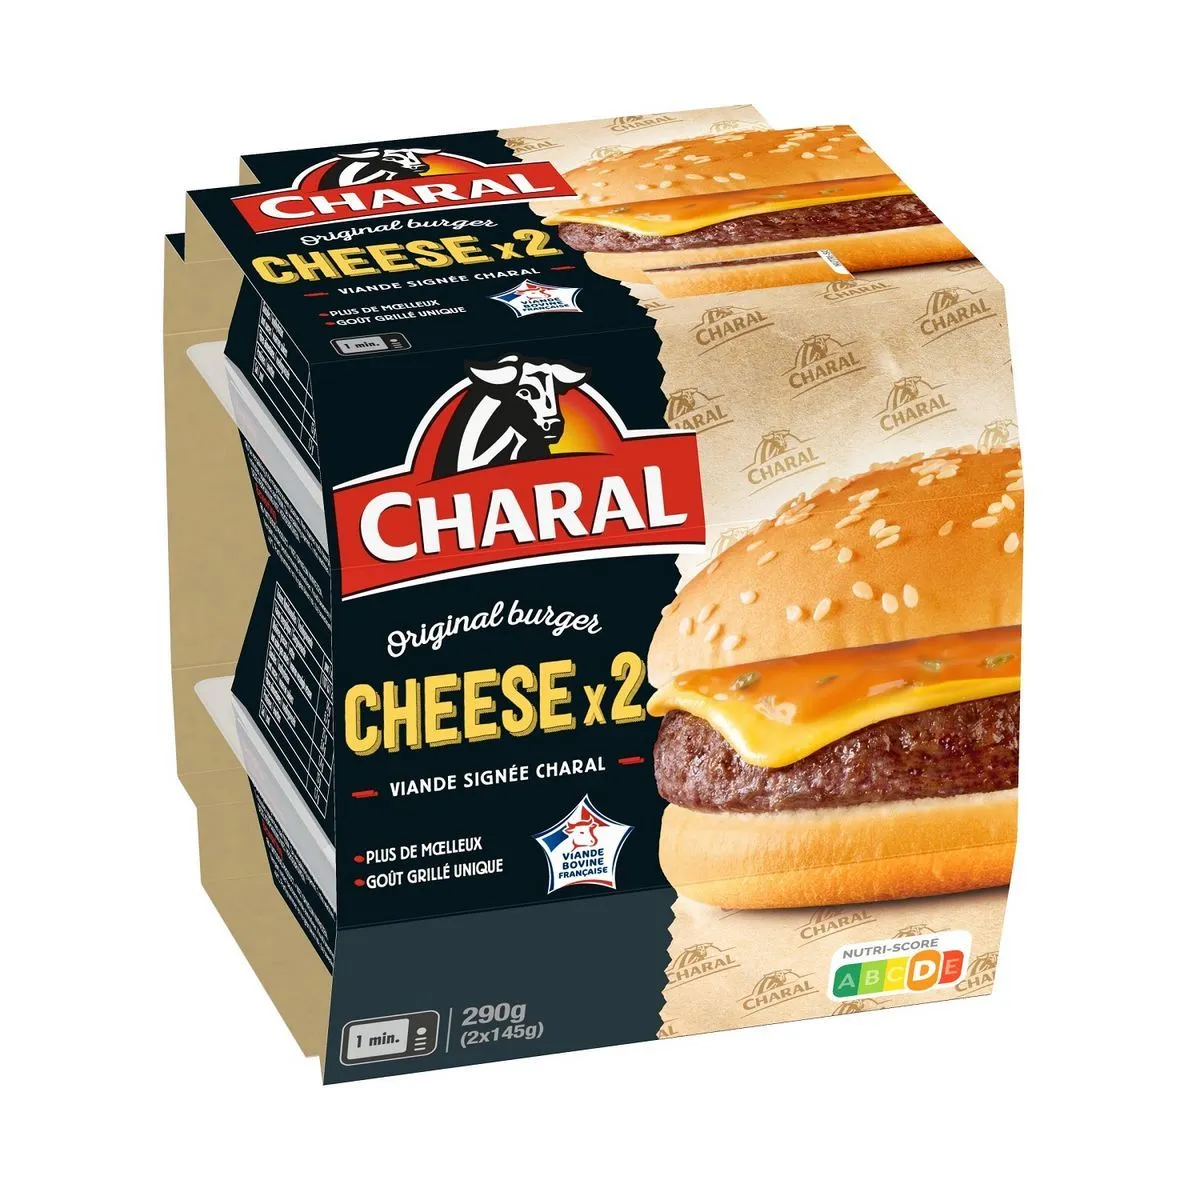 2 cheeseburger charal